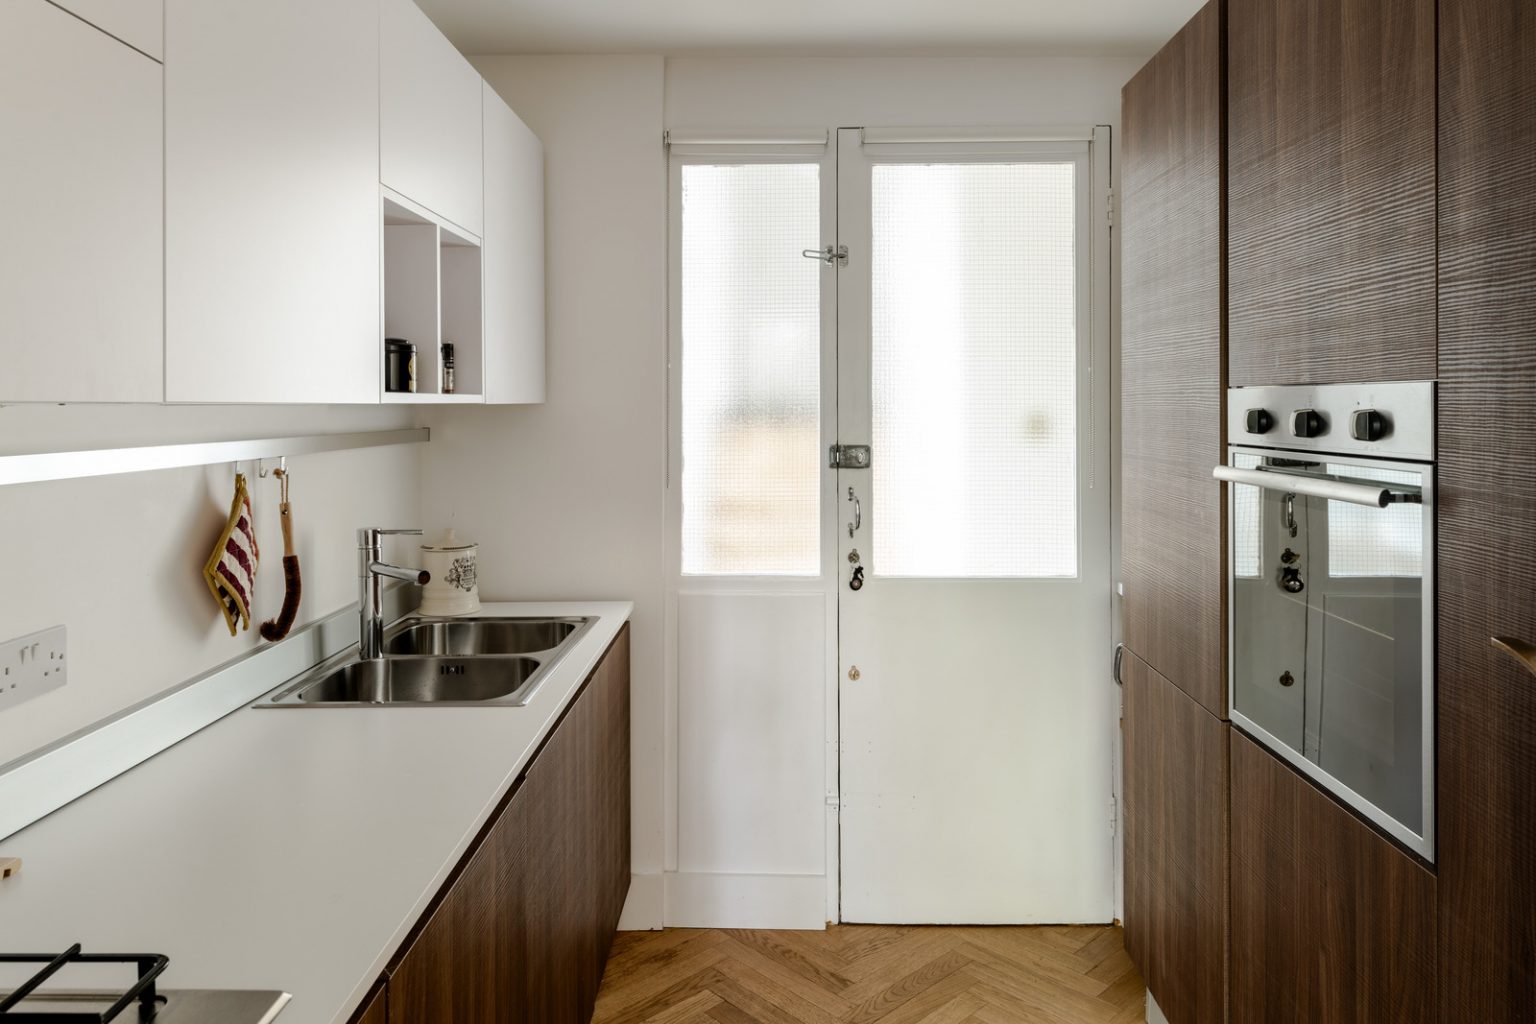 Dark wood kitchen apartment modern decor